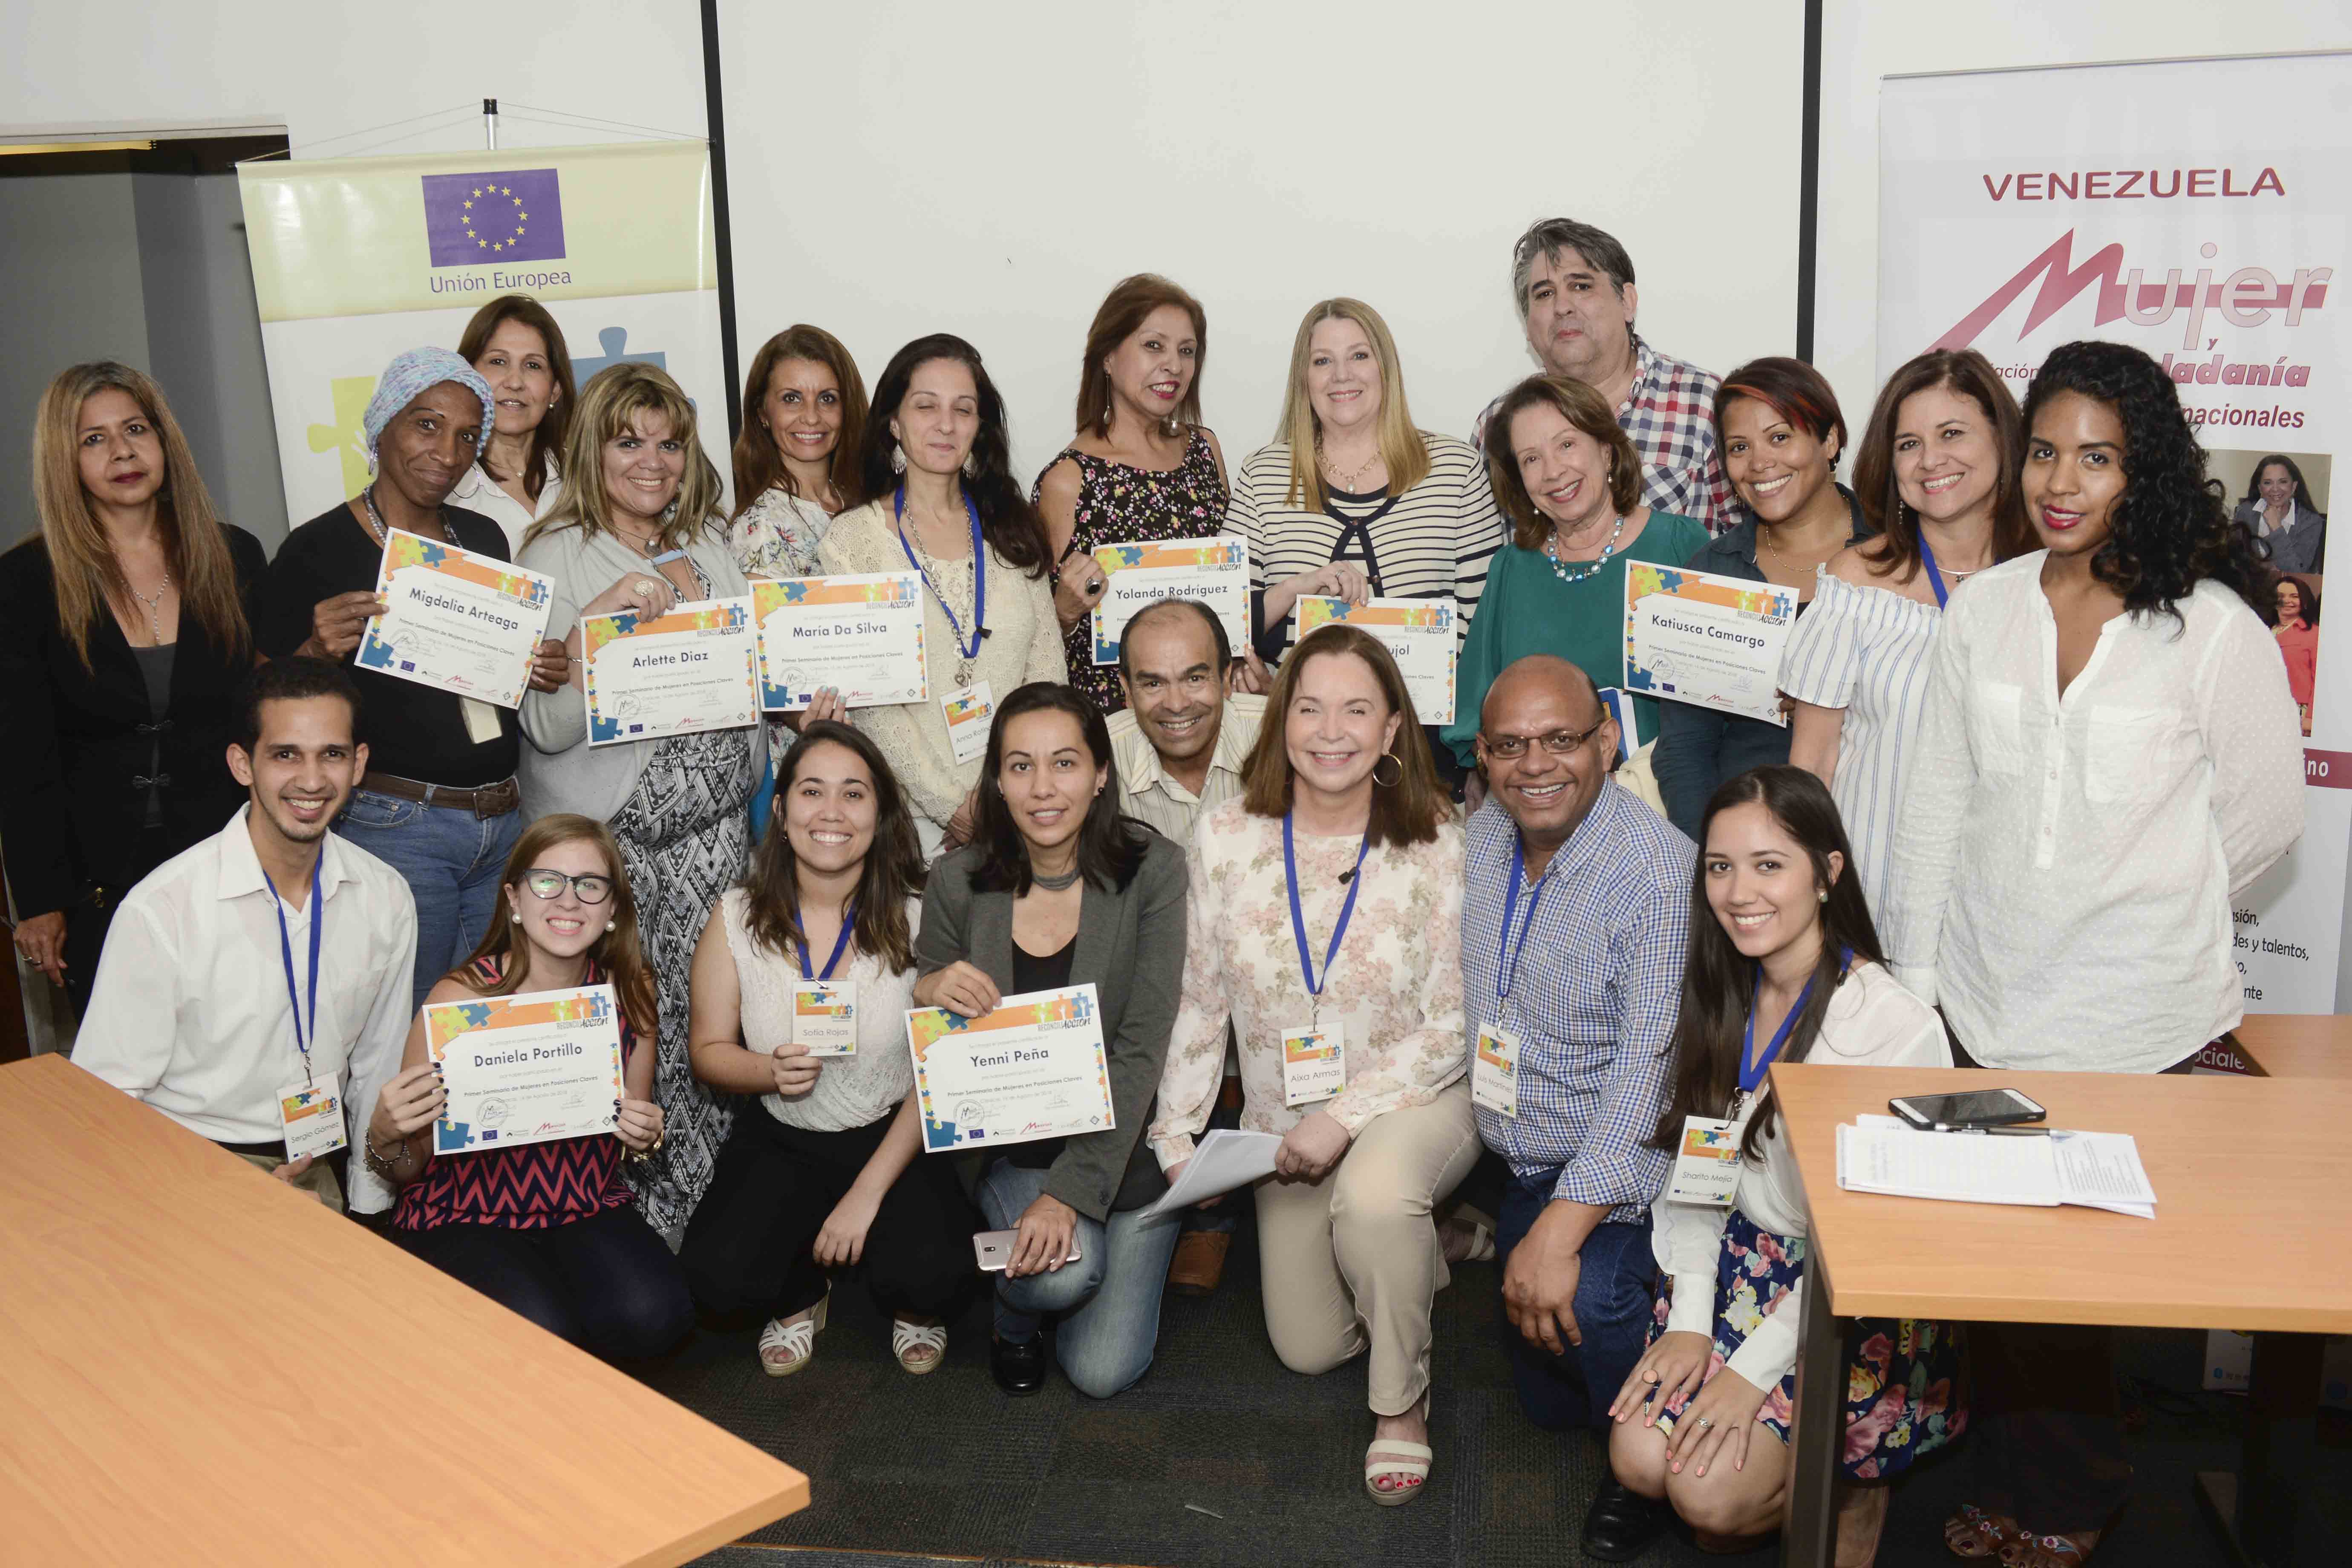 Mujer Y Ciudadanía A.c, People In Need, Oportunidad Y La Universidad Monteávila Realizaron El Primer Seminario Para Mujeres En Posiciones Claves En El Nacional